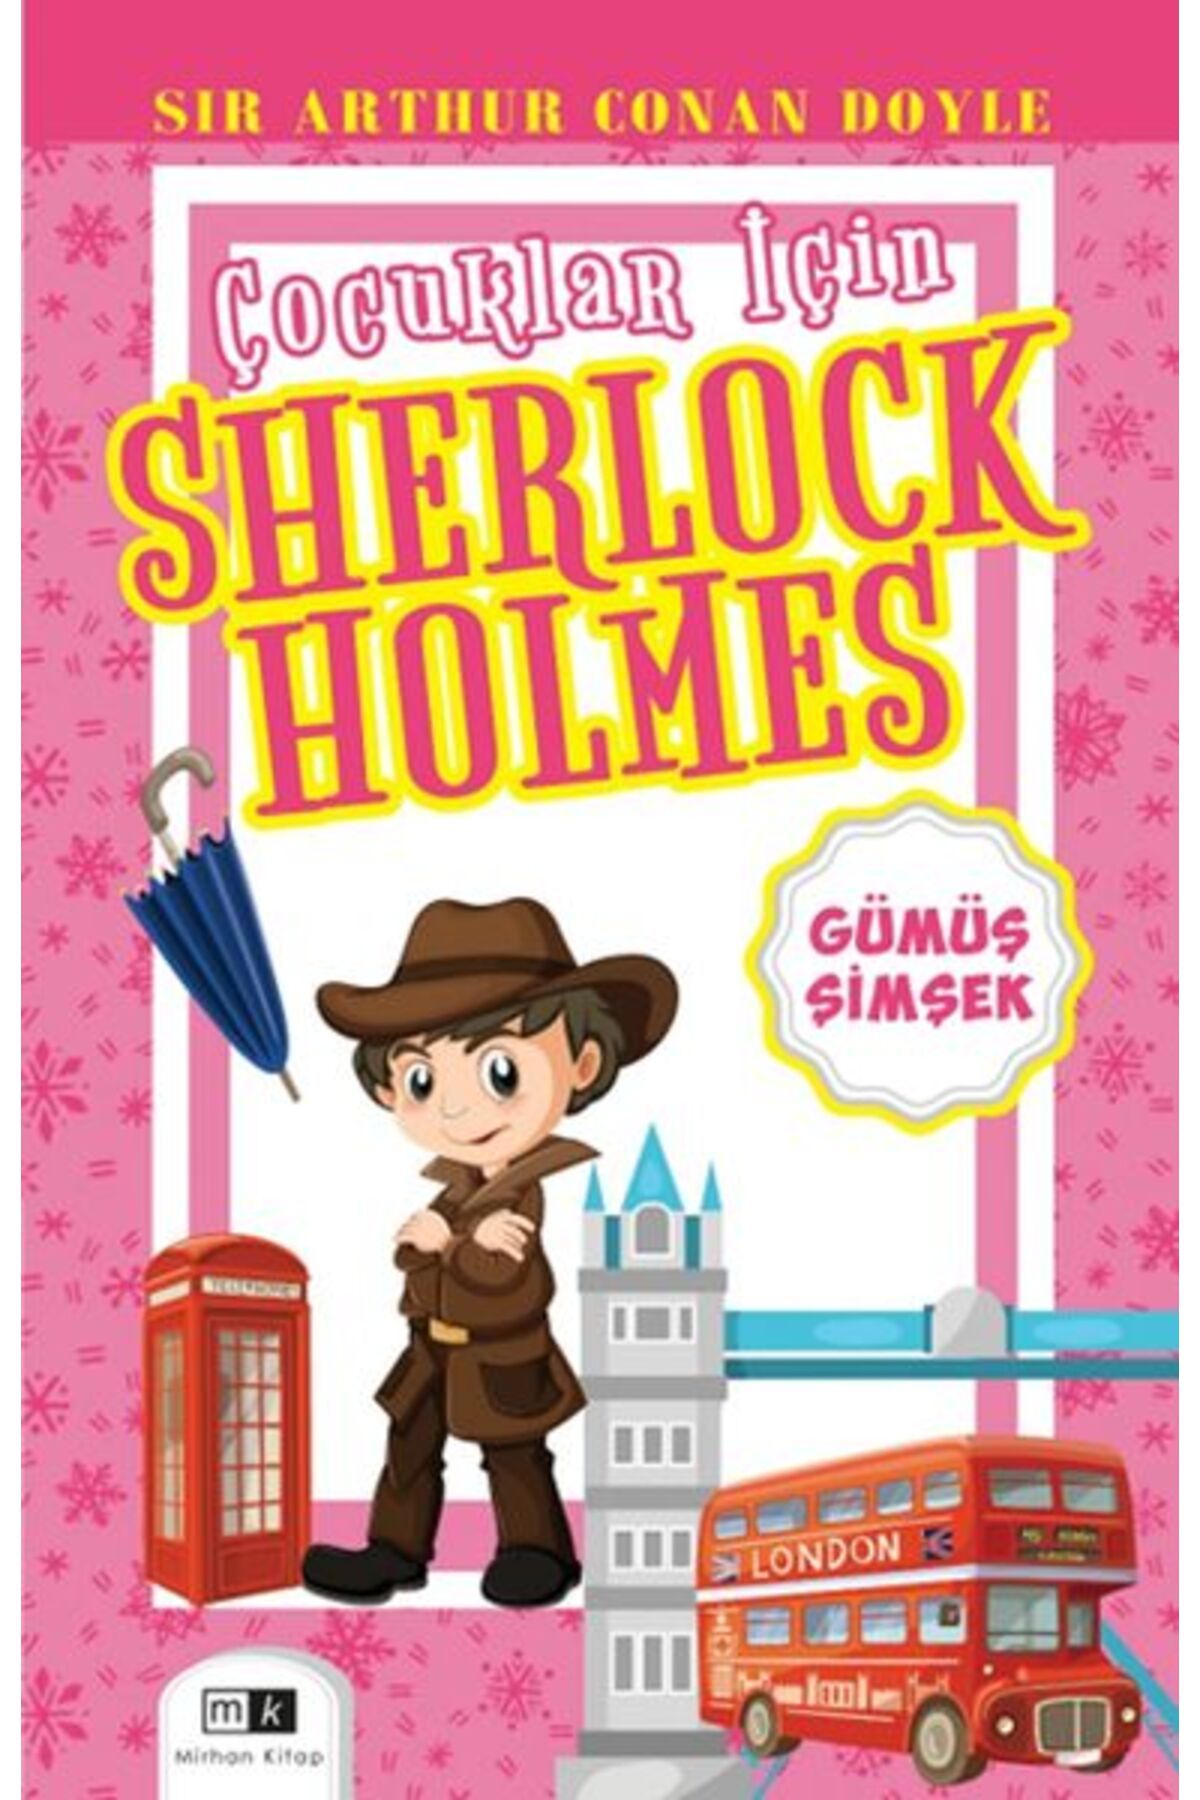 Mirhan Kitap Çocuklar İçin Sherlock Holmes - Gümüş Şimşek Mirhan Kitap (Korunaklı Poşetle)